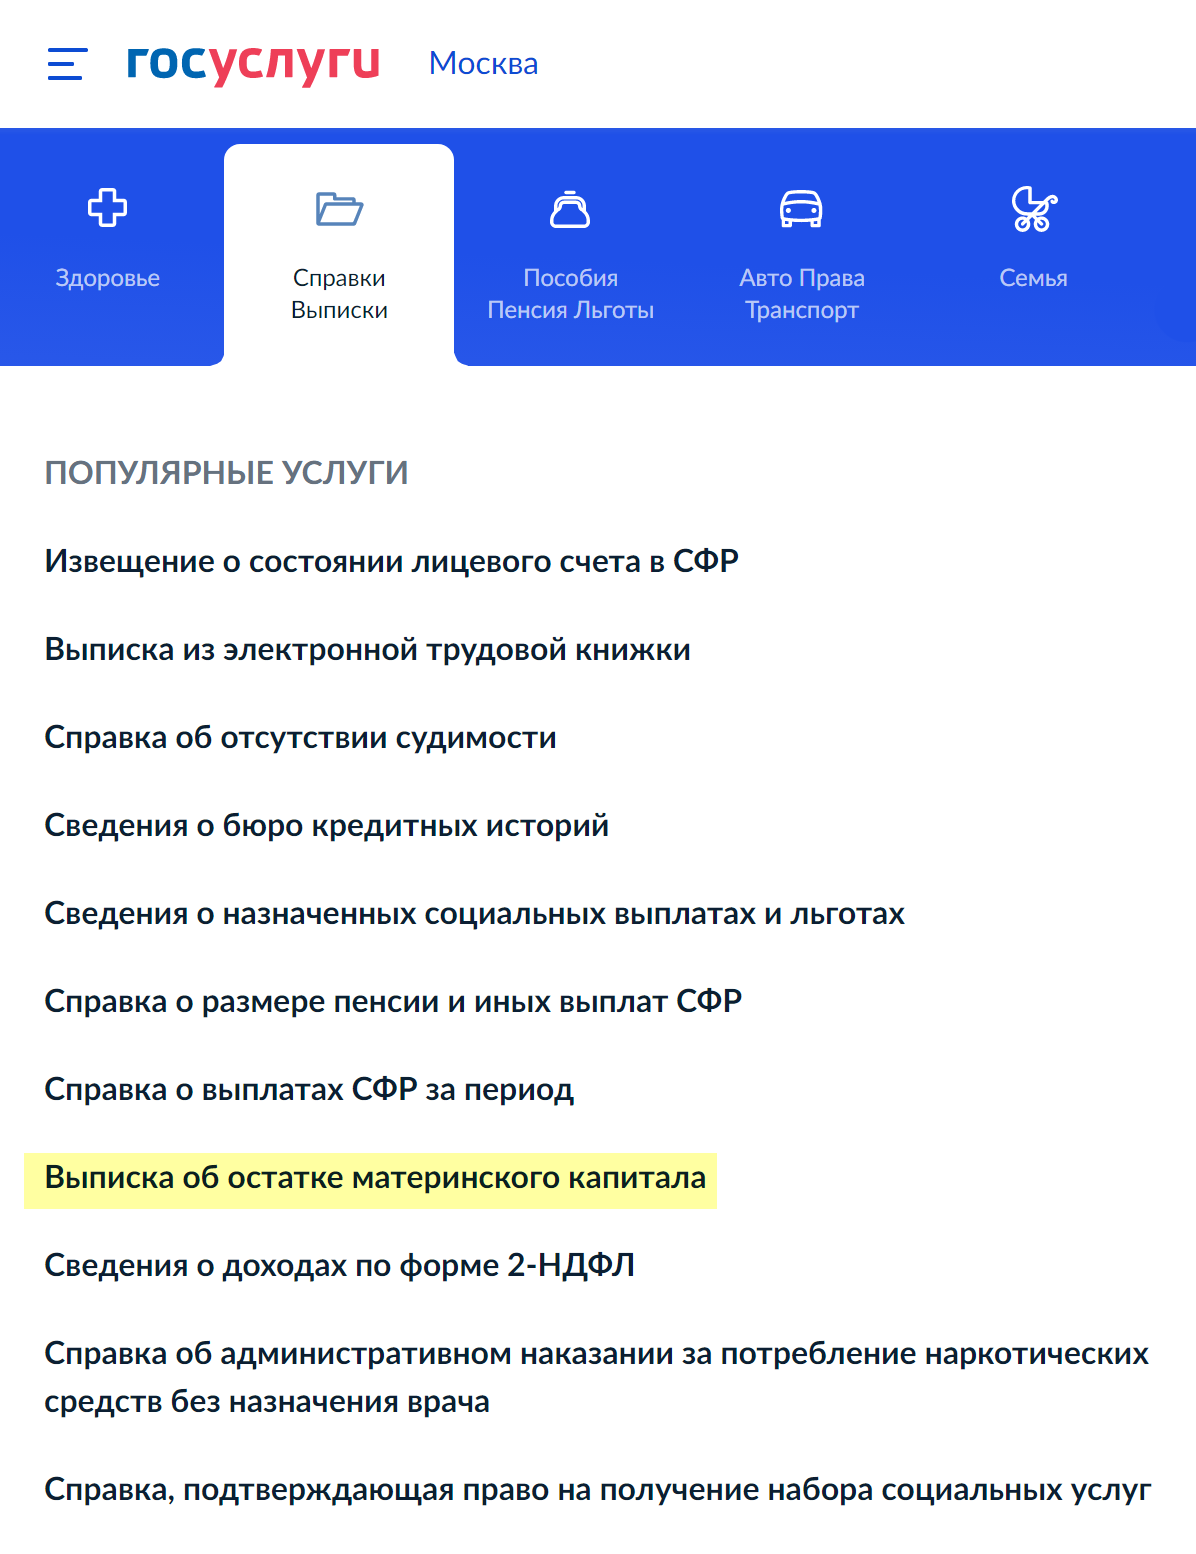 Оформить выписку об остатке материнского капитала можно на госуслугах. Источник: gosuslugi.ru